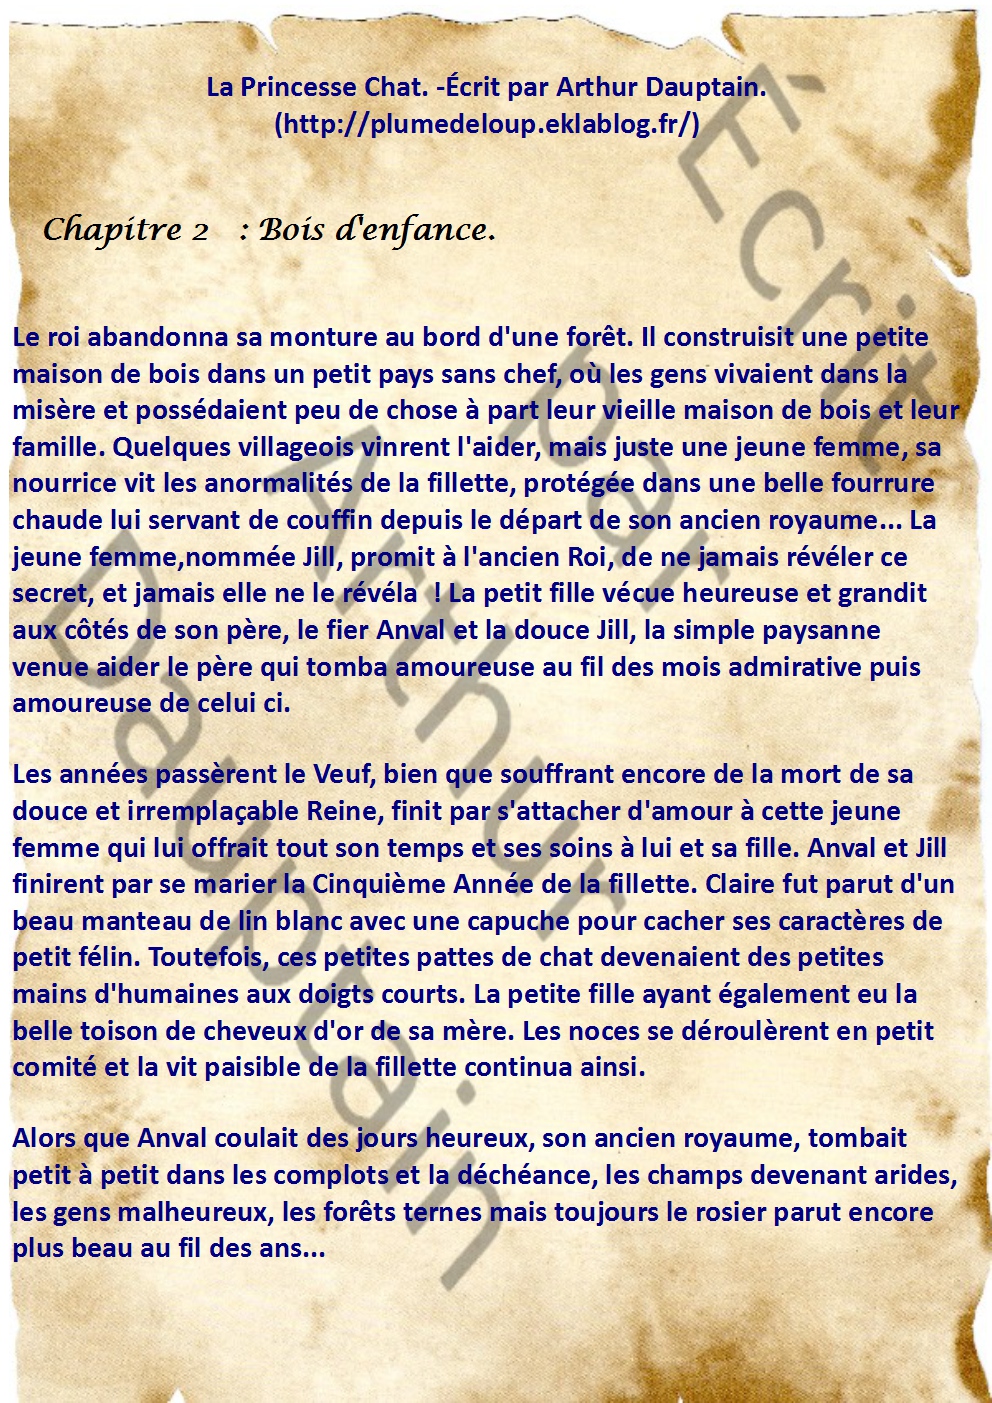 La Princesse Chat: Chapitre 2, Bois d'Enfance